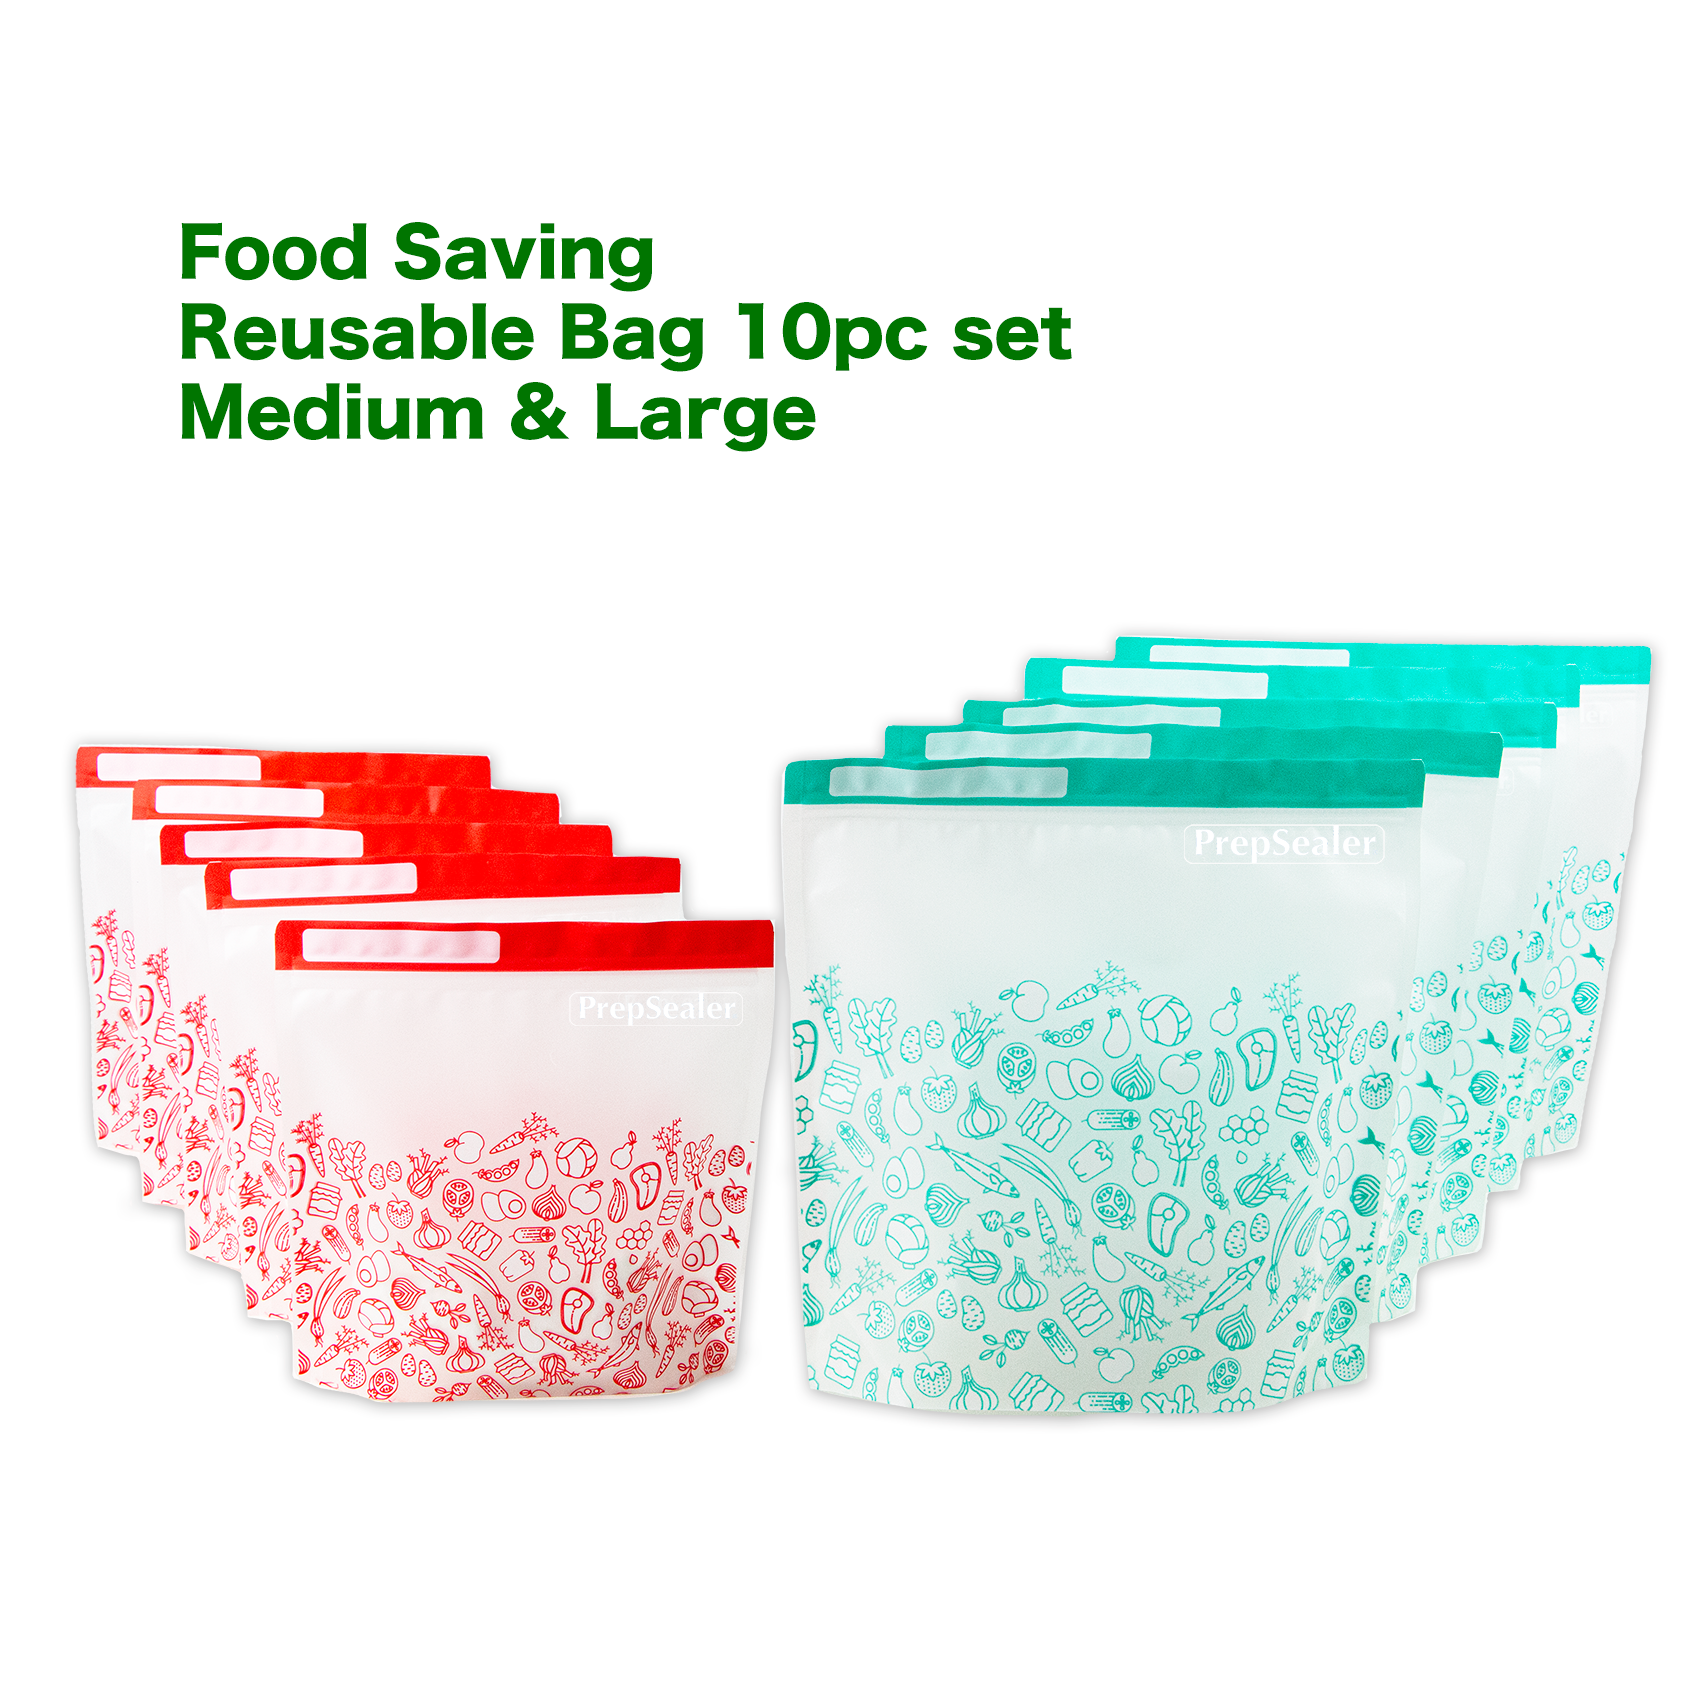 Reusable Food Saver Bags